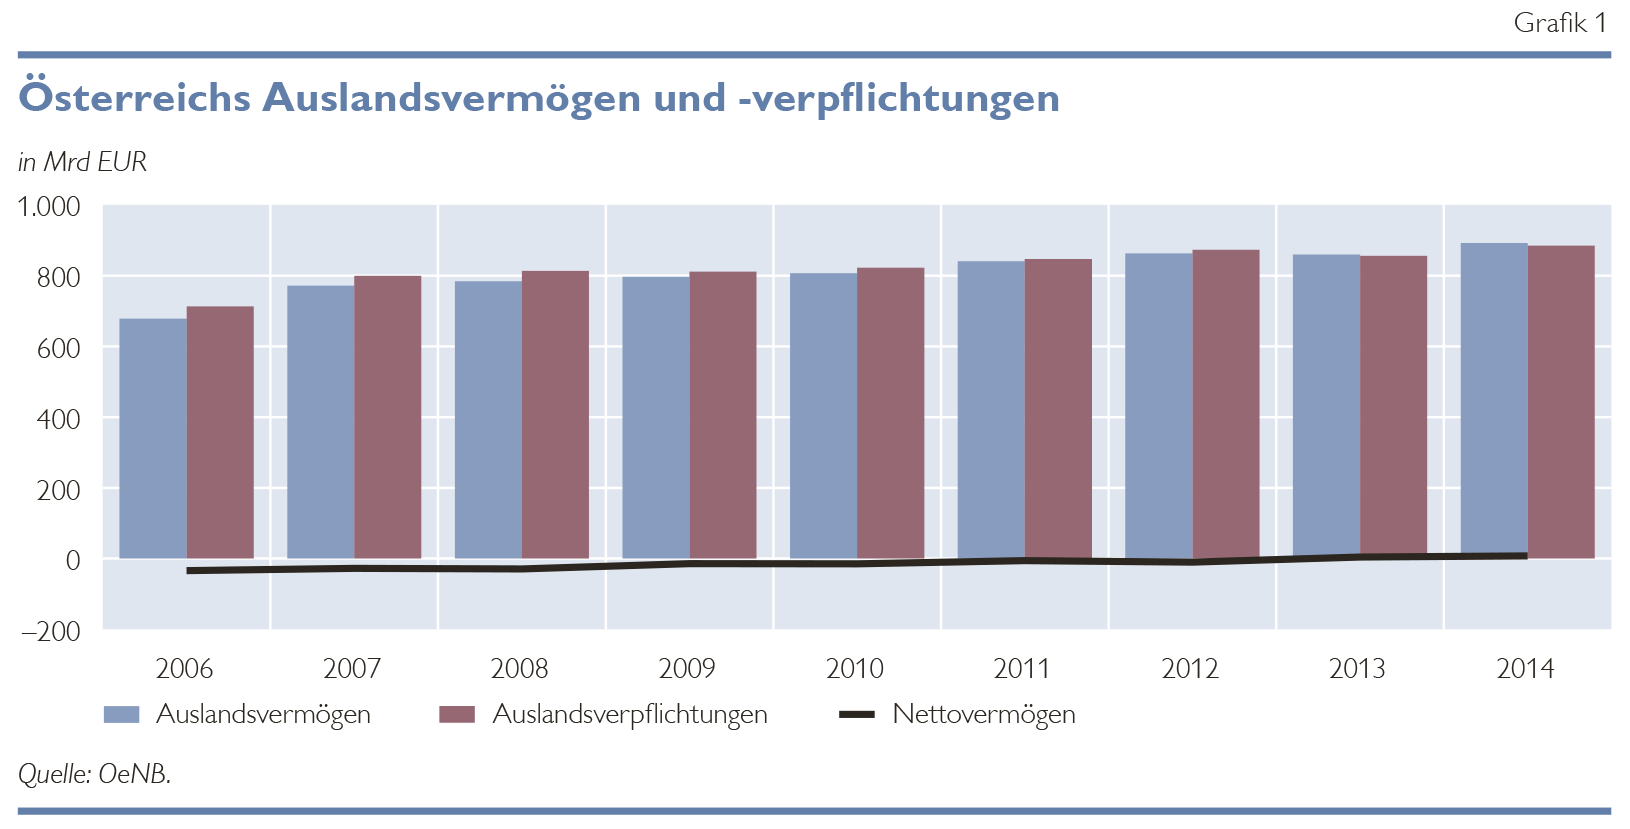 Österreichs Auslandsvermögen und -verpflichtungen in Mrd. EUR